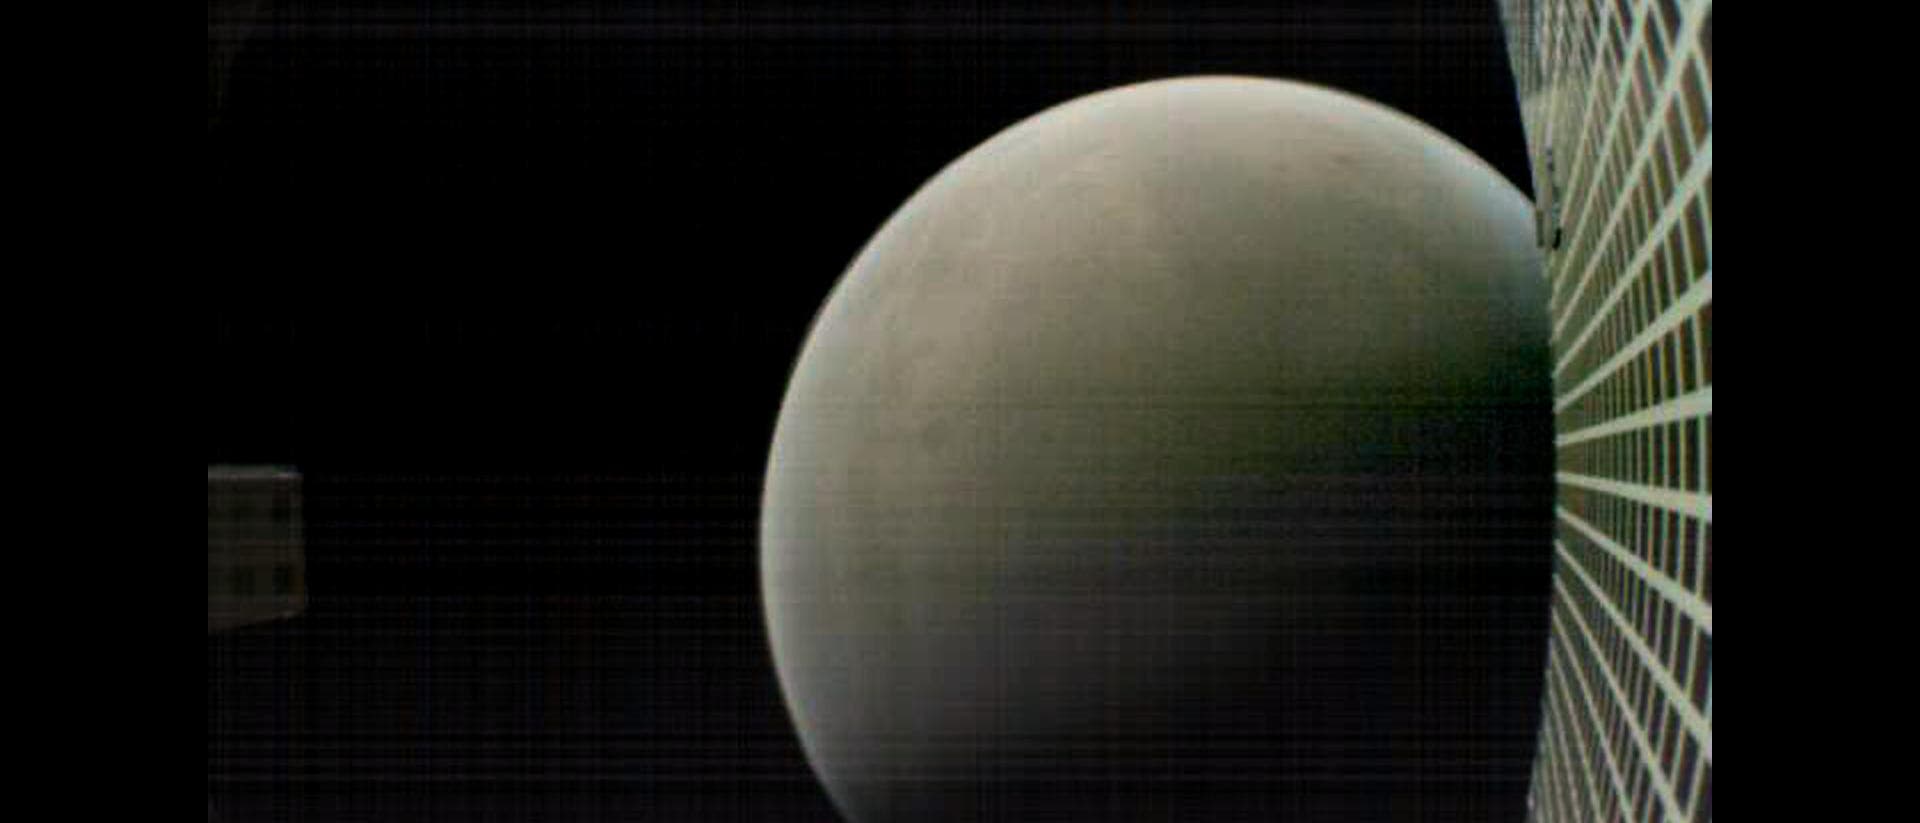 Mars kurz nach der Landung von Insight (Aufnahme eines MarCO-Kleinsatelliten)